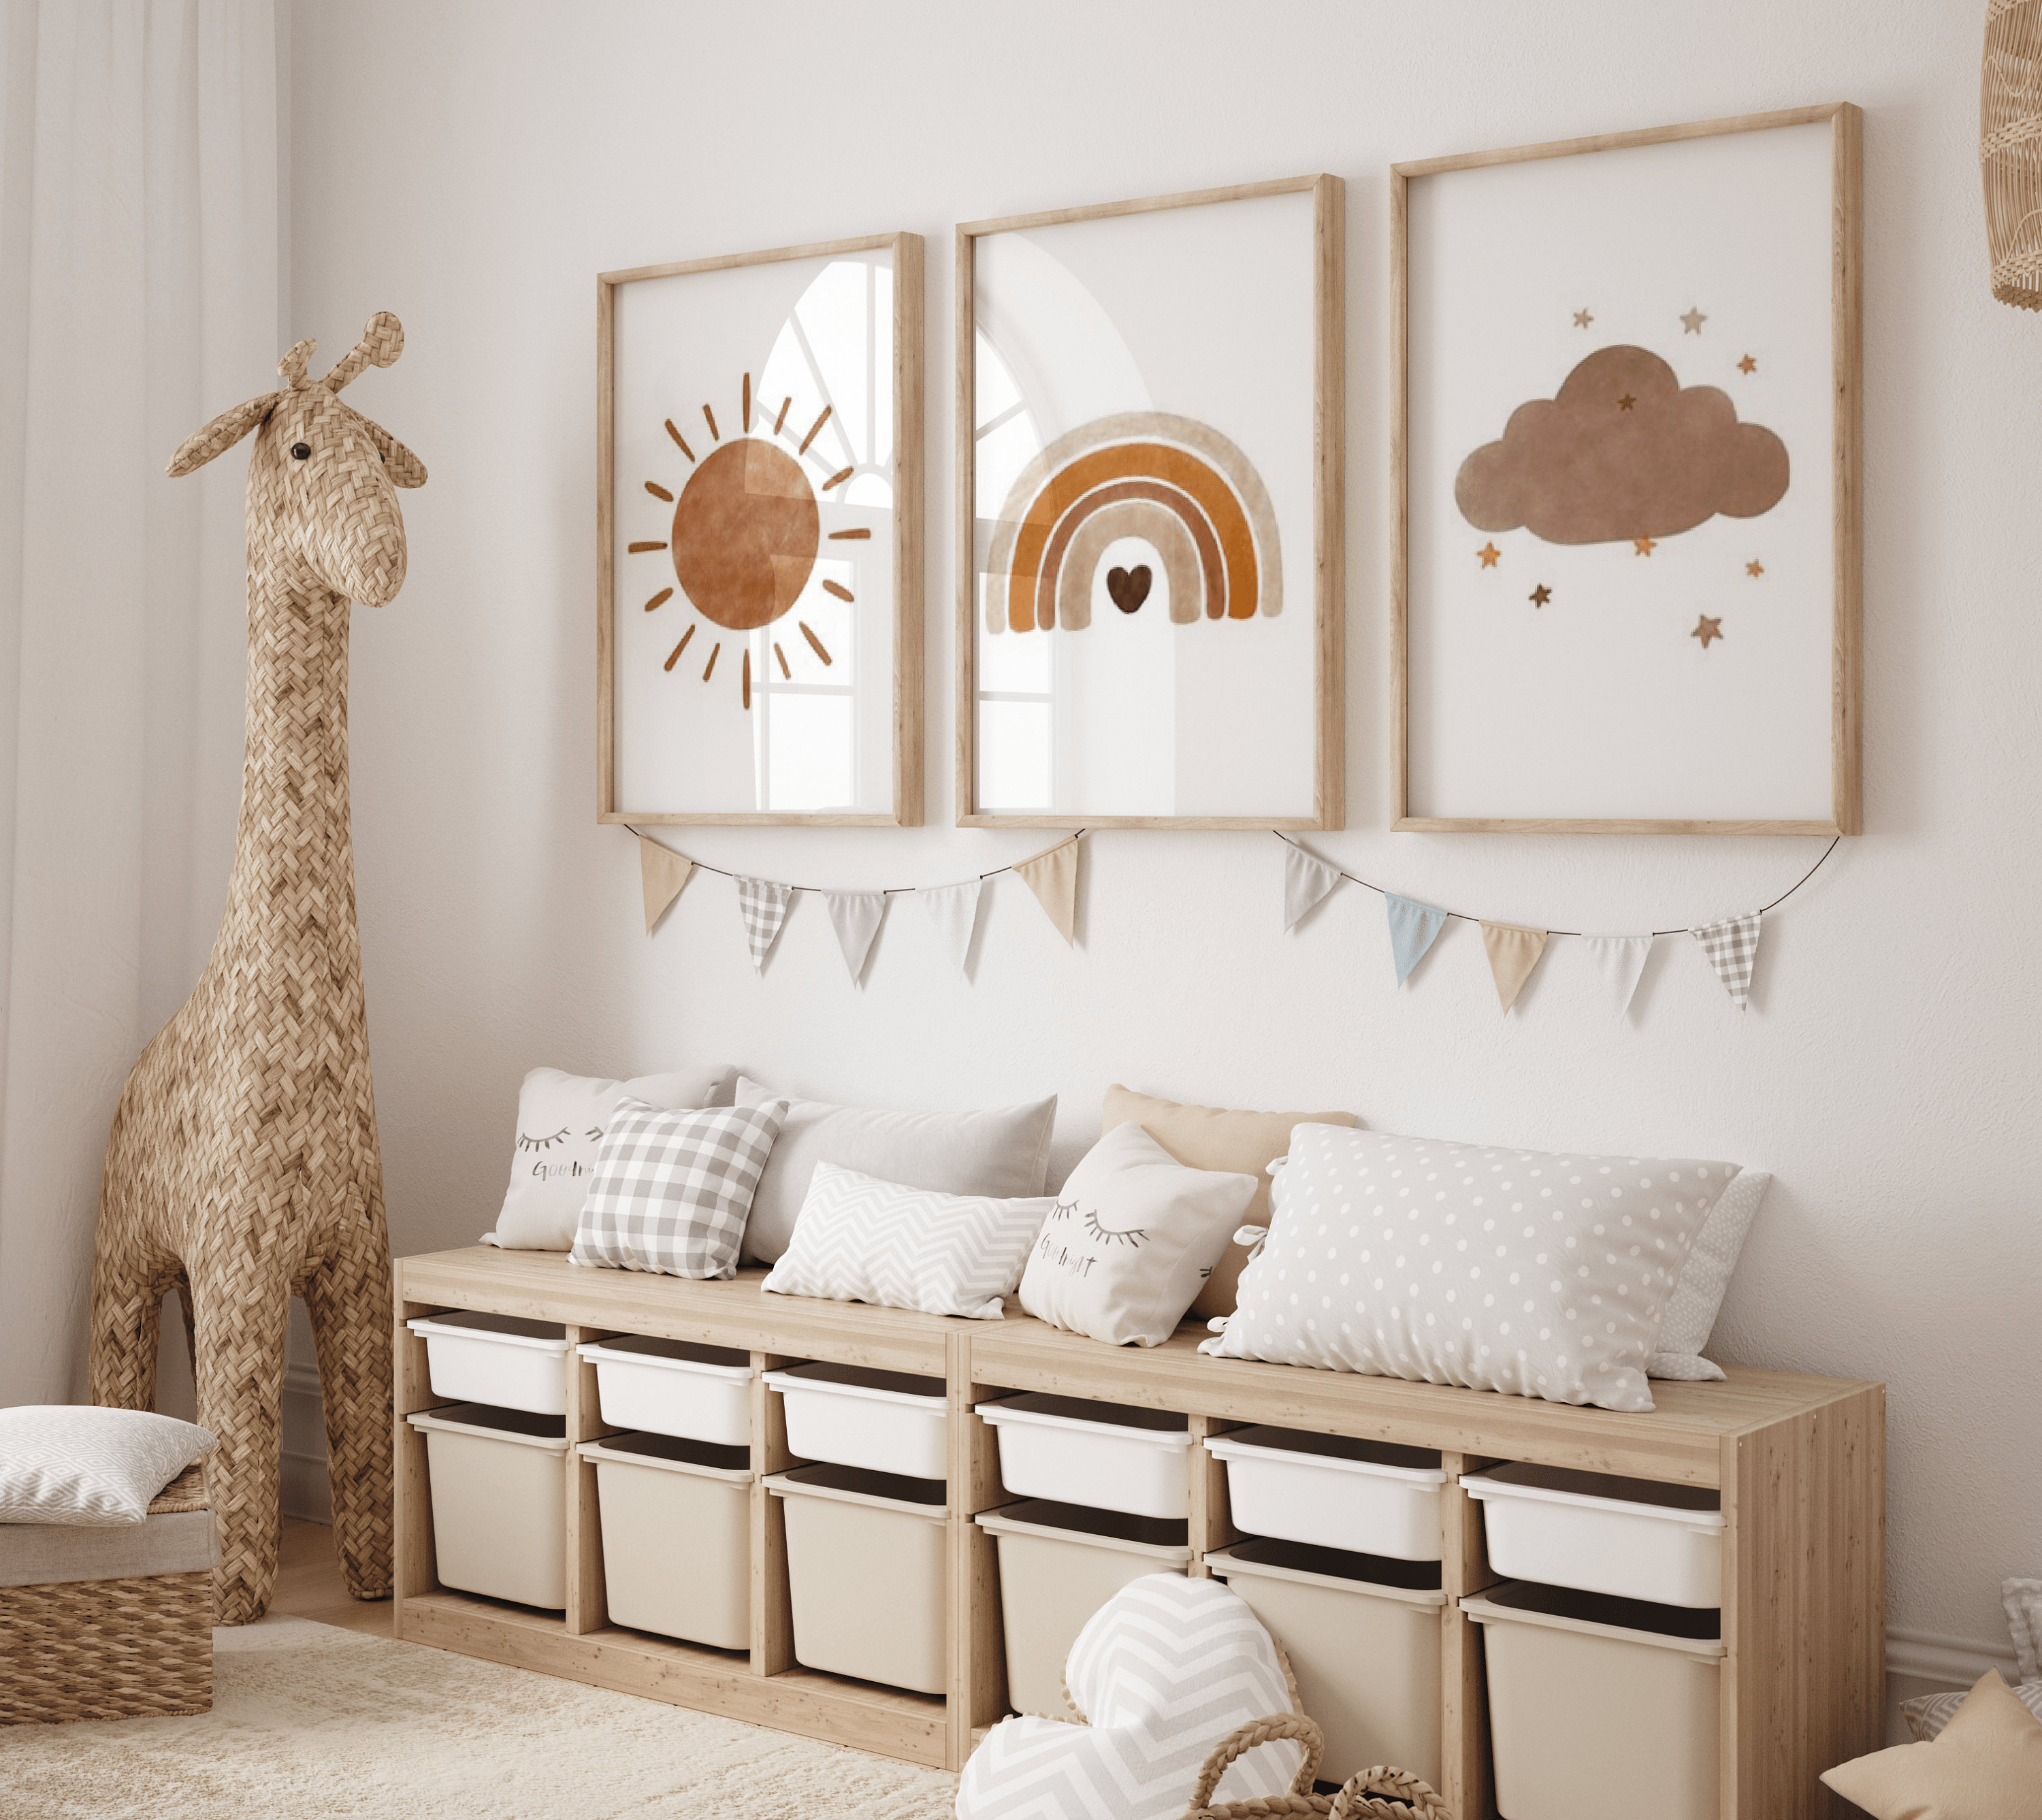 Affiche thème Lama et cactus décoration chambre d'enfant et bébé